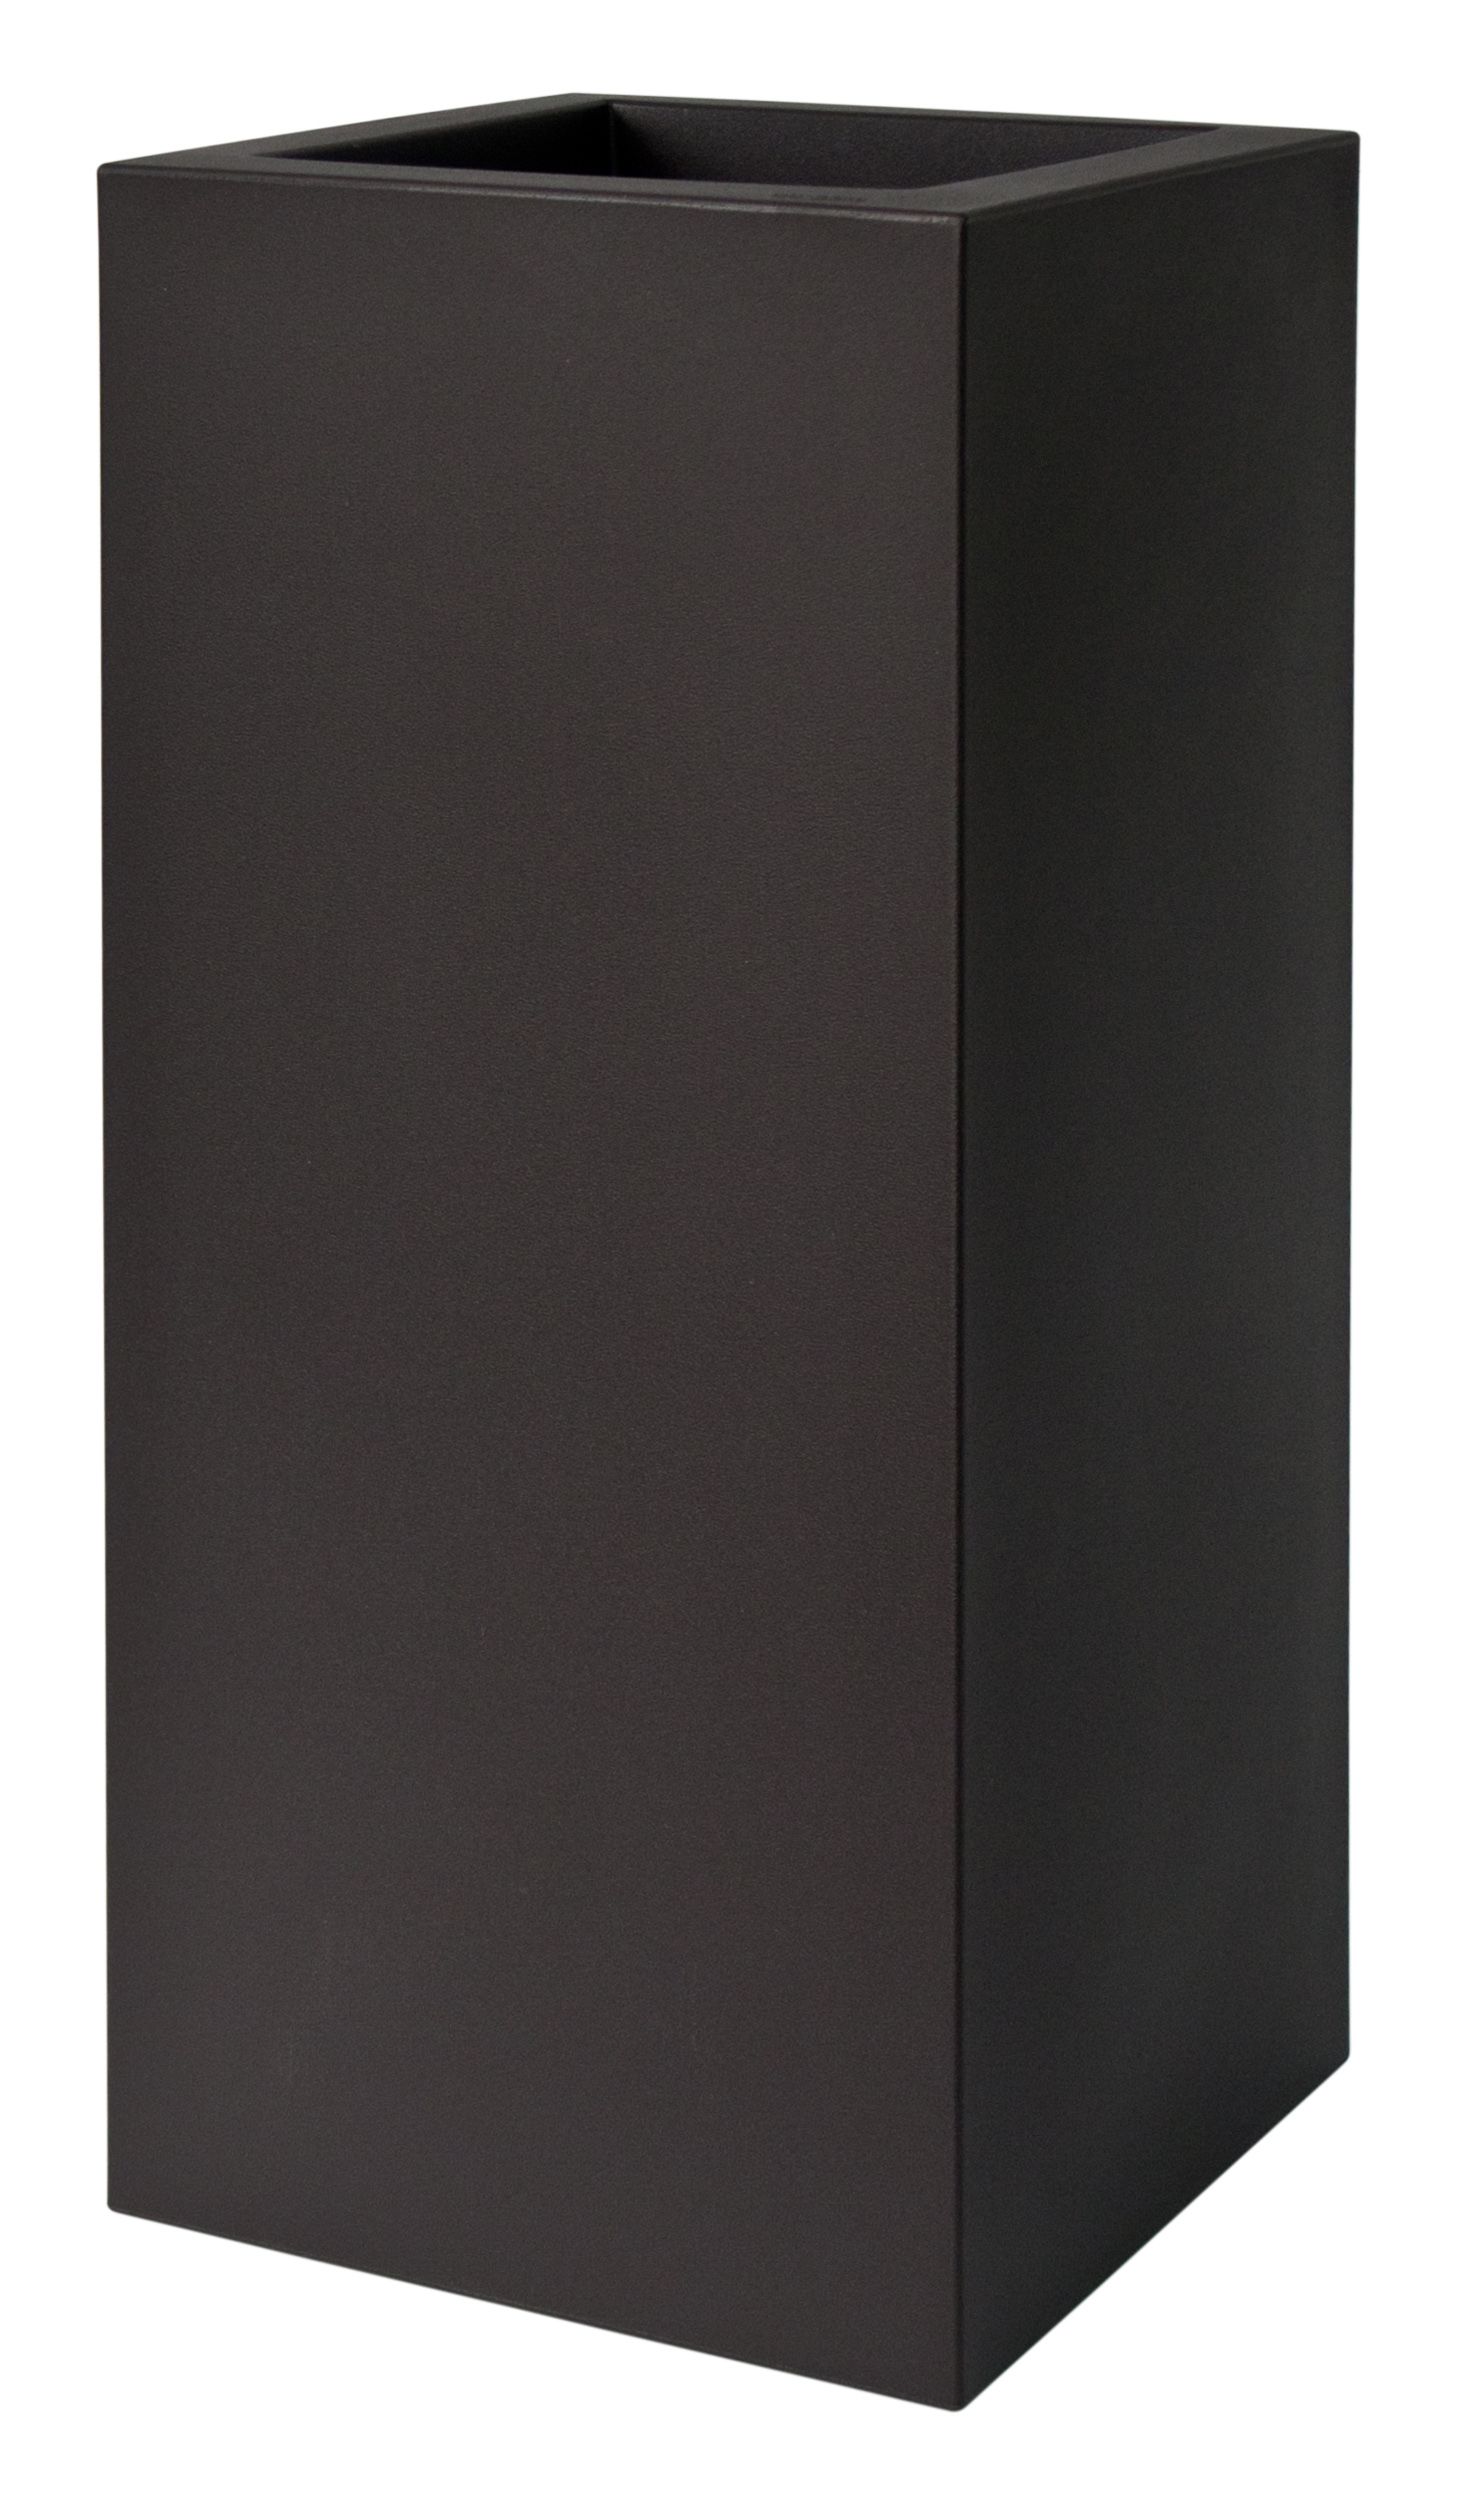 Plust - Dizajnový kvetináč KUBE HIGH, 40 x 40 x 70 cm - čierny